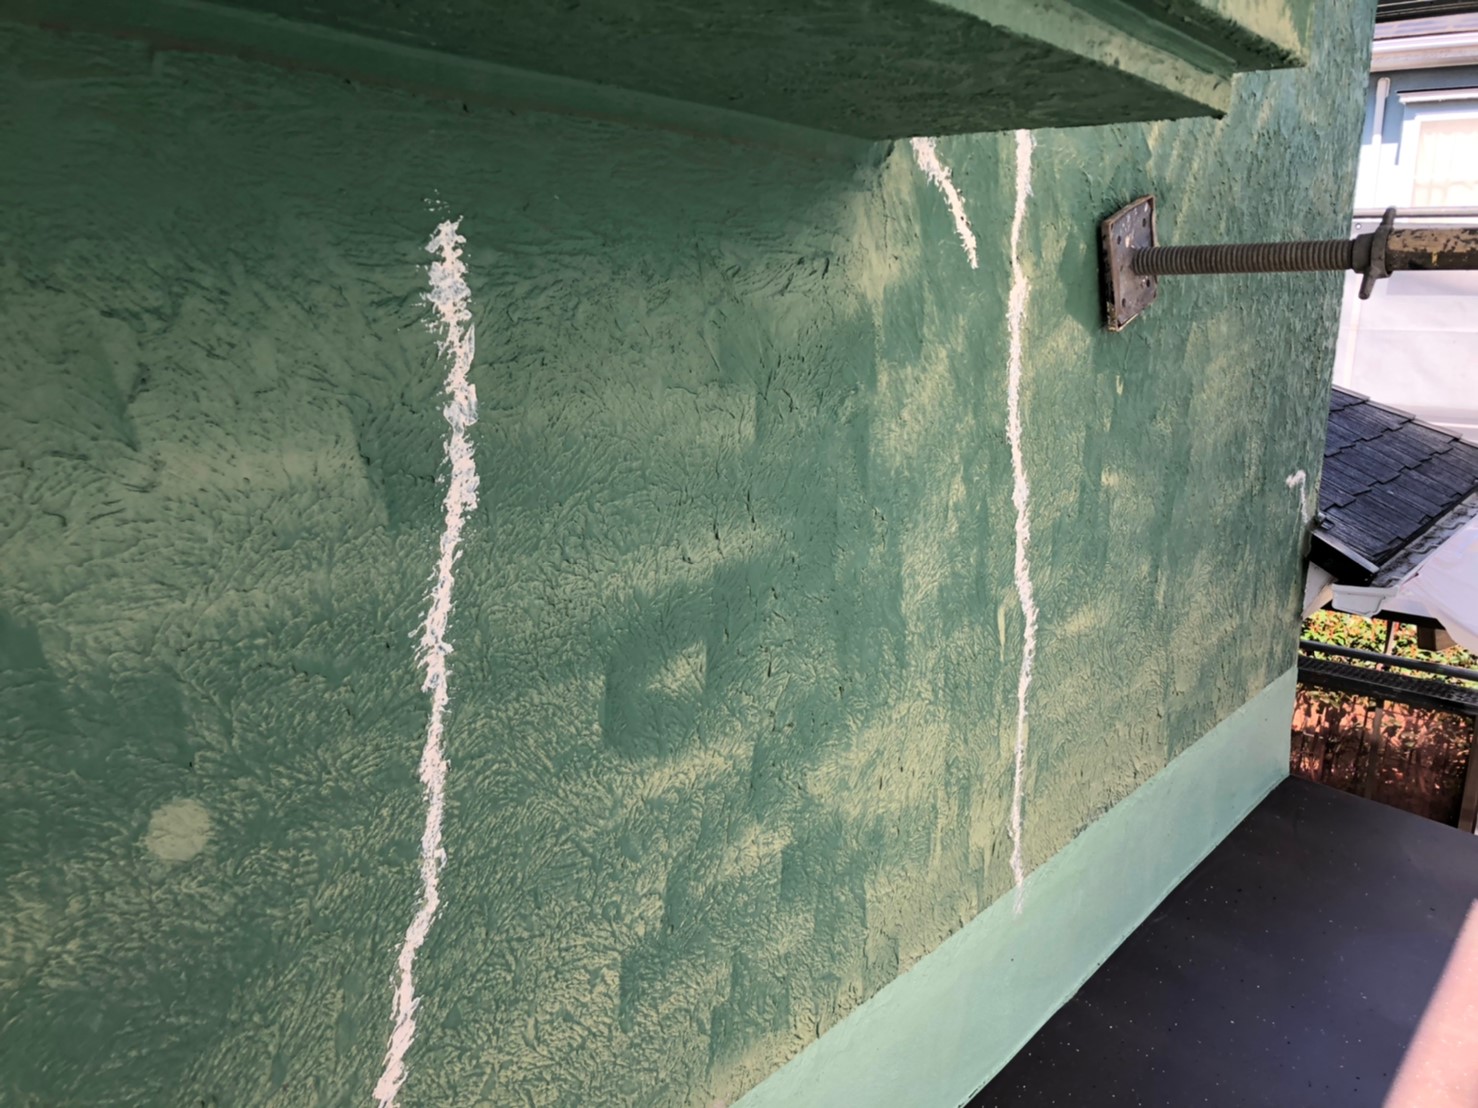 ー外壁塗装の耐用年数と家ごとに最適な塗料の種類を徹底解説！ー